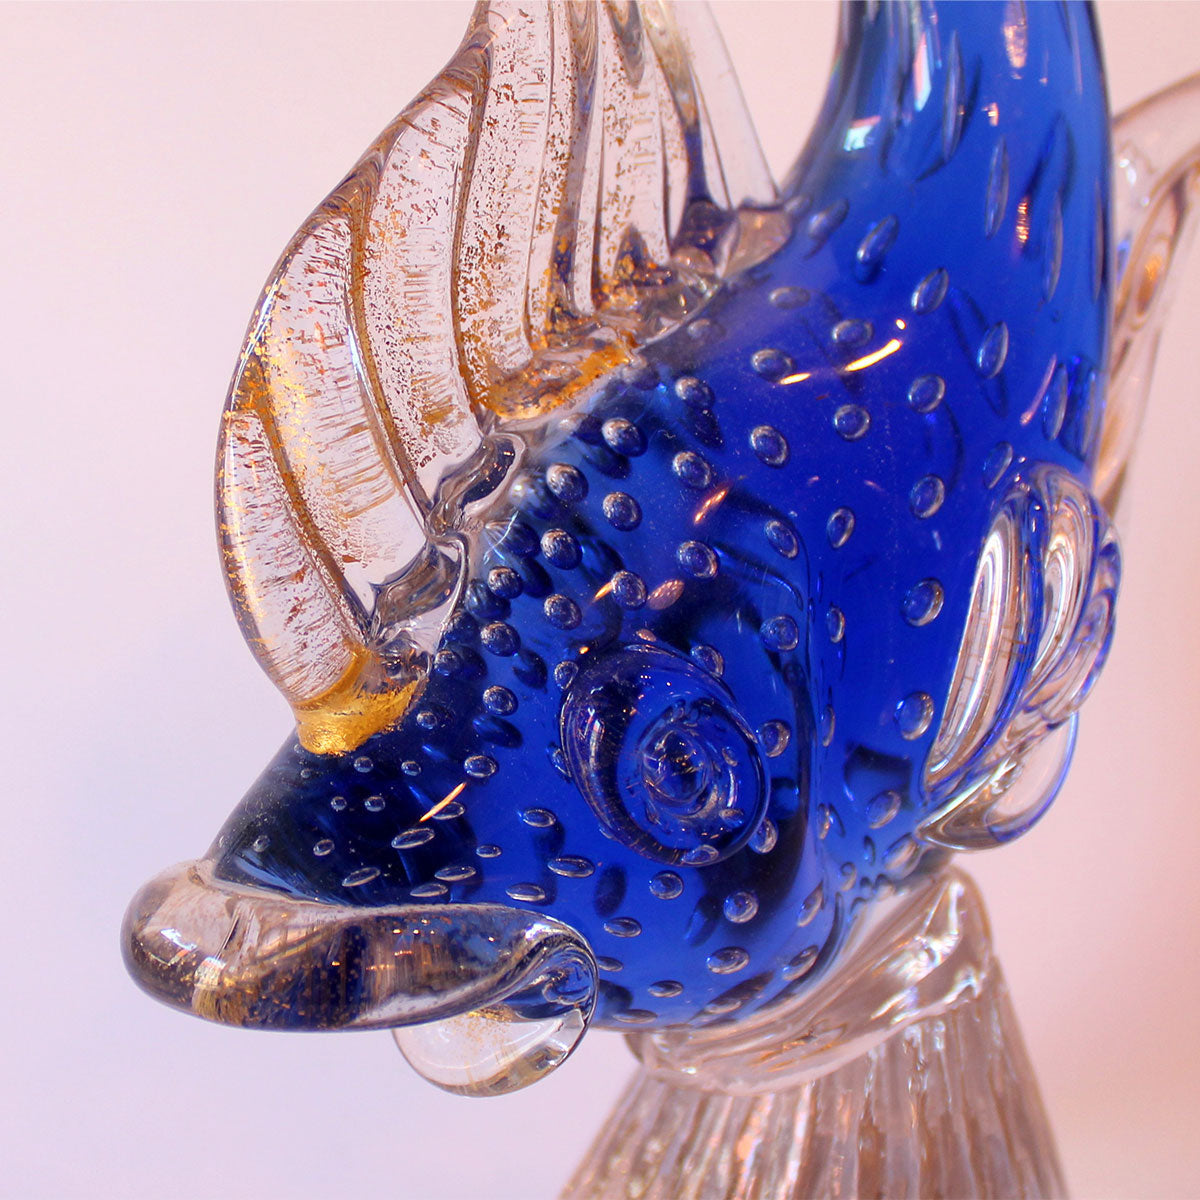 Murano skulpturen fremstår i klart glas med fisken i blåt